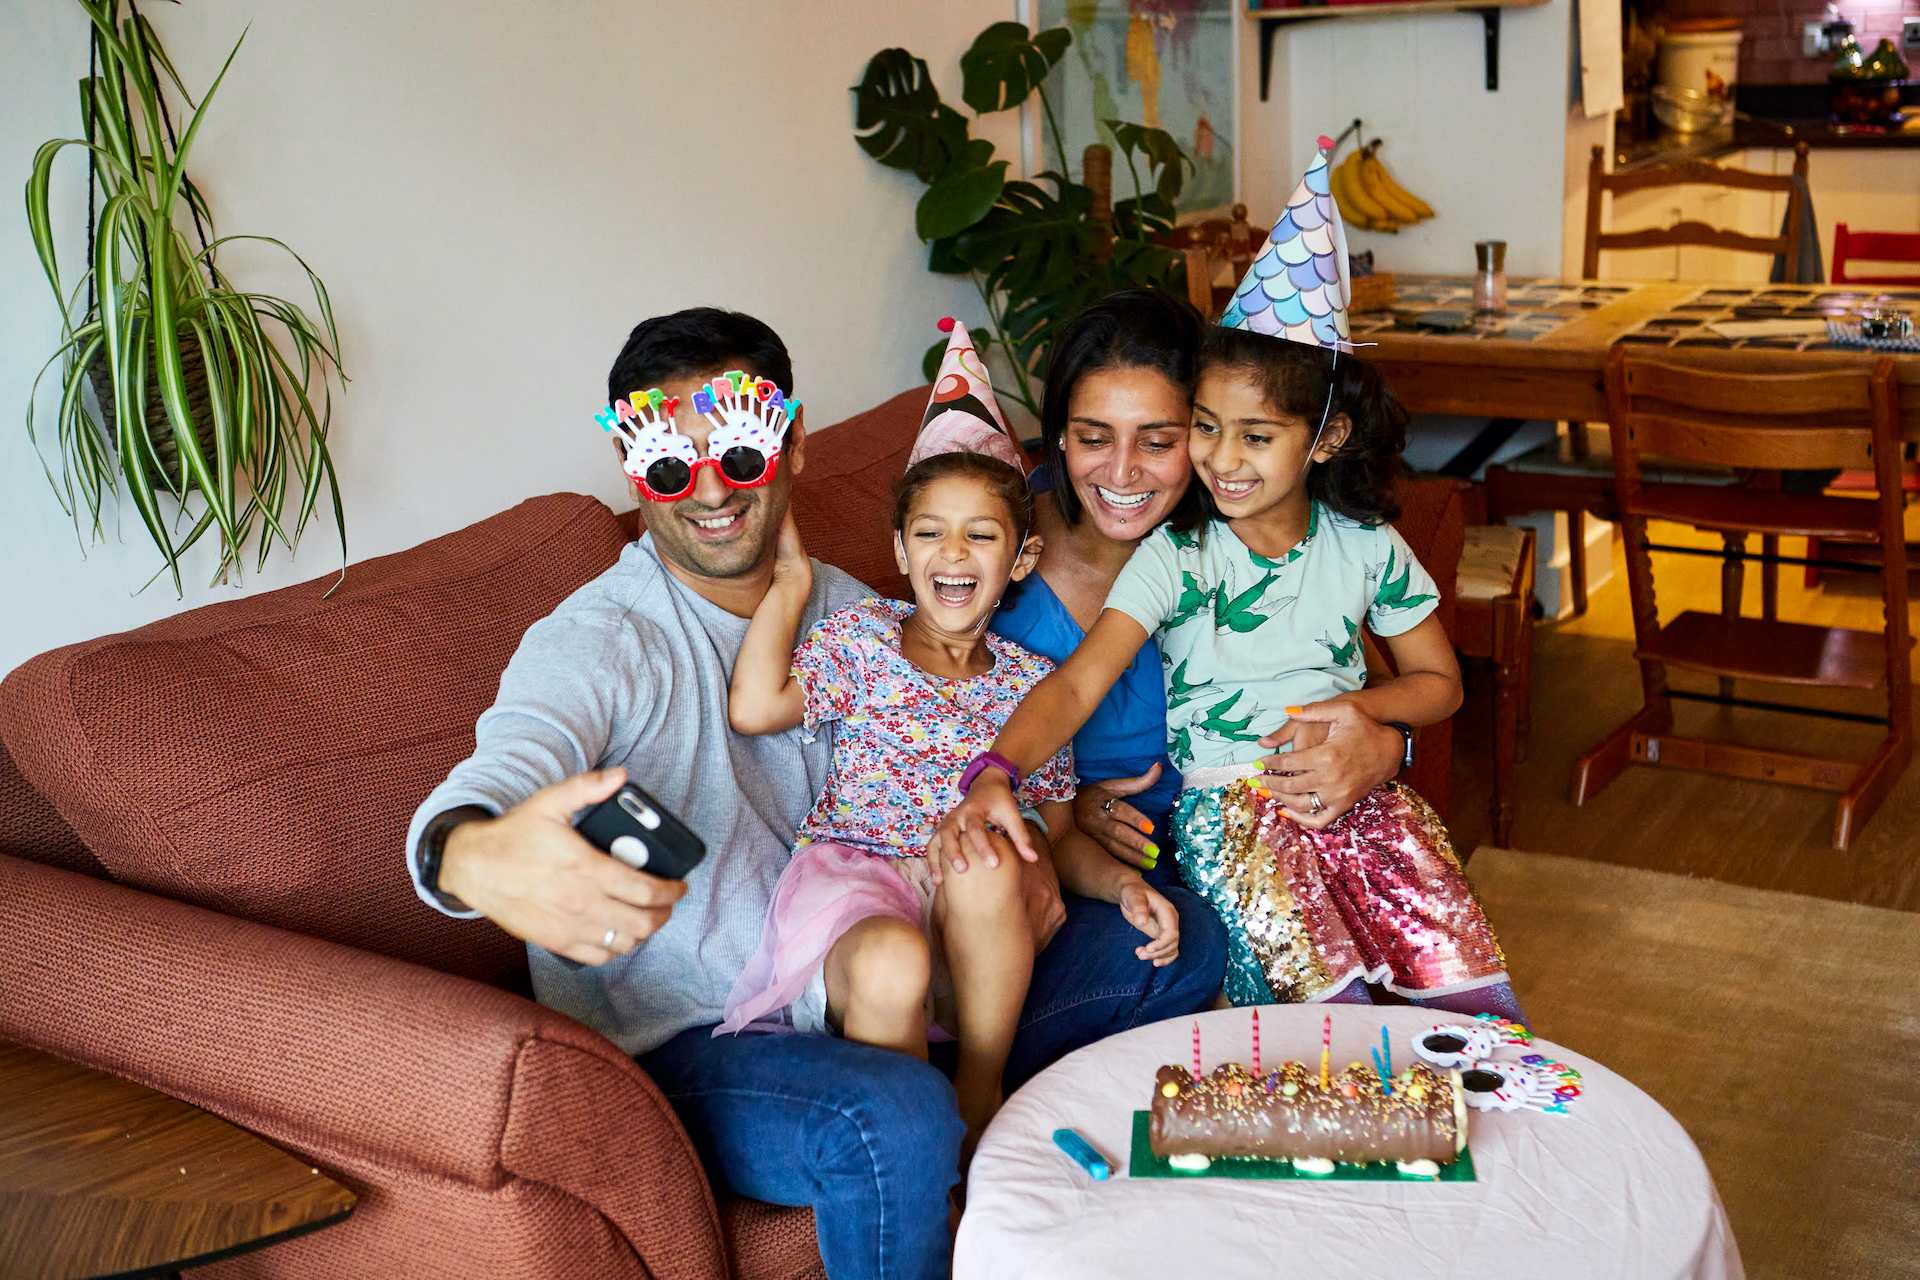 Uma imagem de uma família rindo em uma festa de aniversário